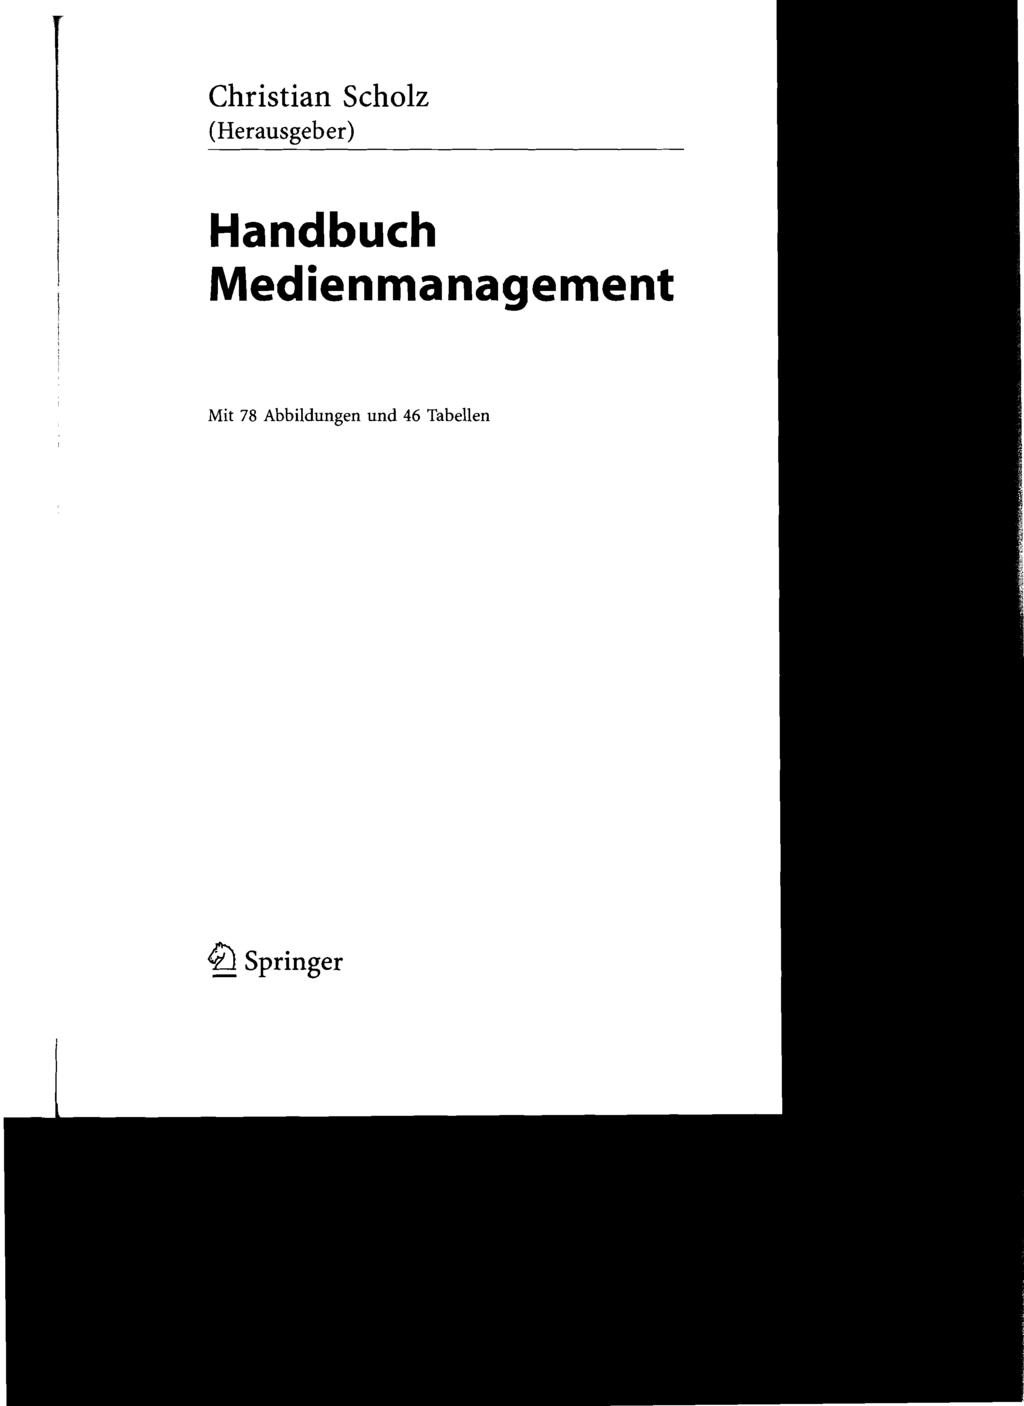 Christian Schülz (Herausgeber) Handbuch